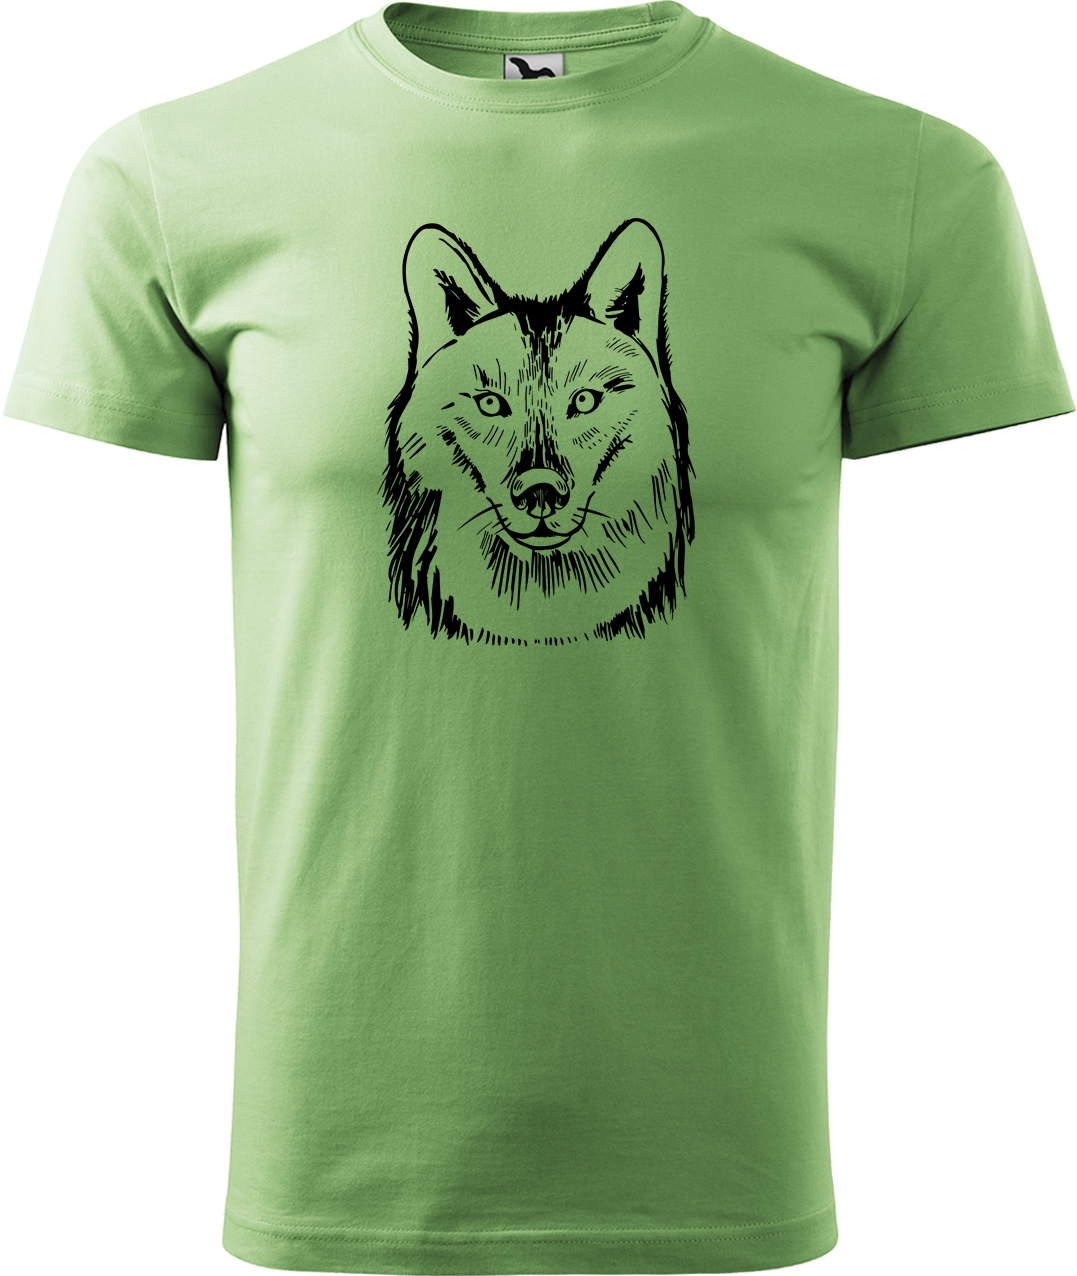 Pánské tričko s vlkem - Kresba vlka Velikost: S, Barva: Trávově zelená (39), Střih: pánský